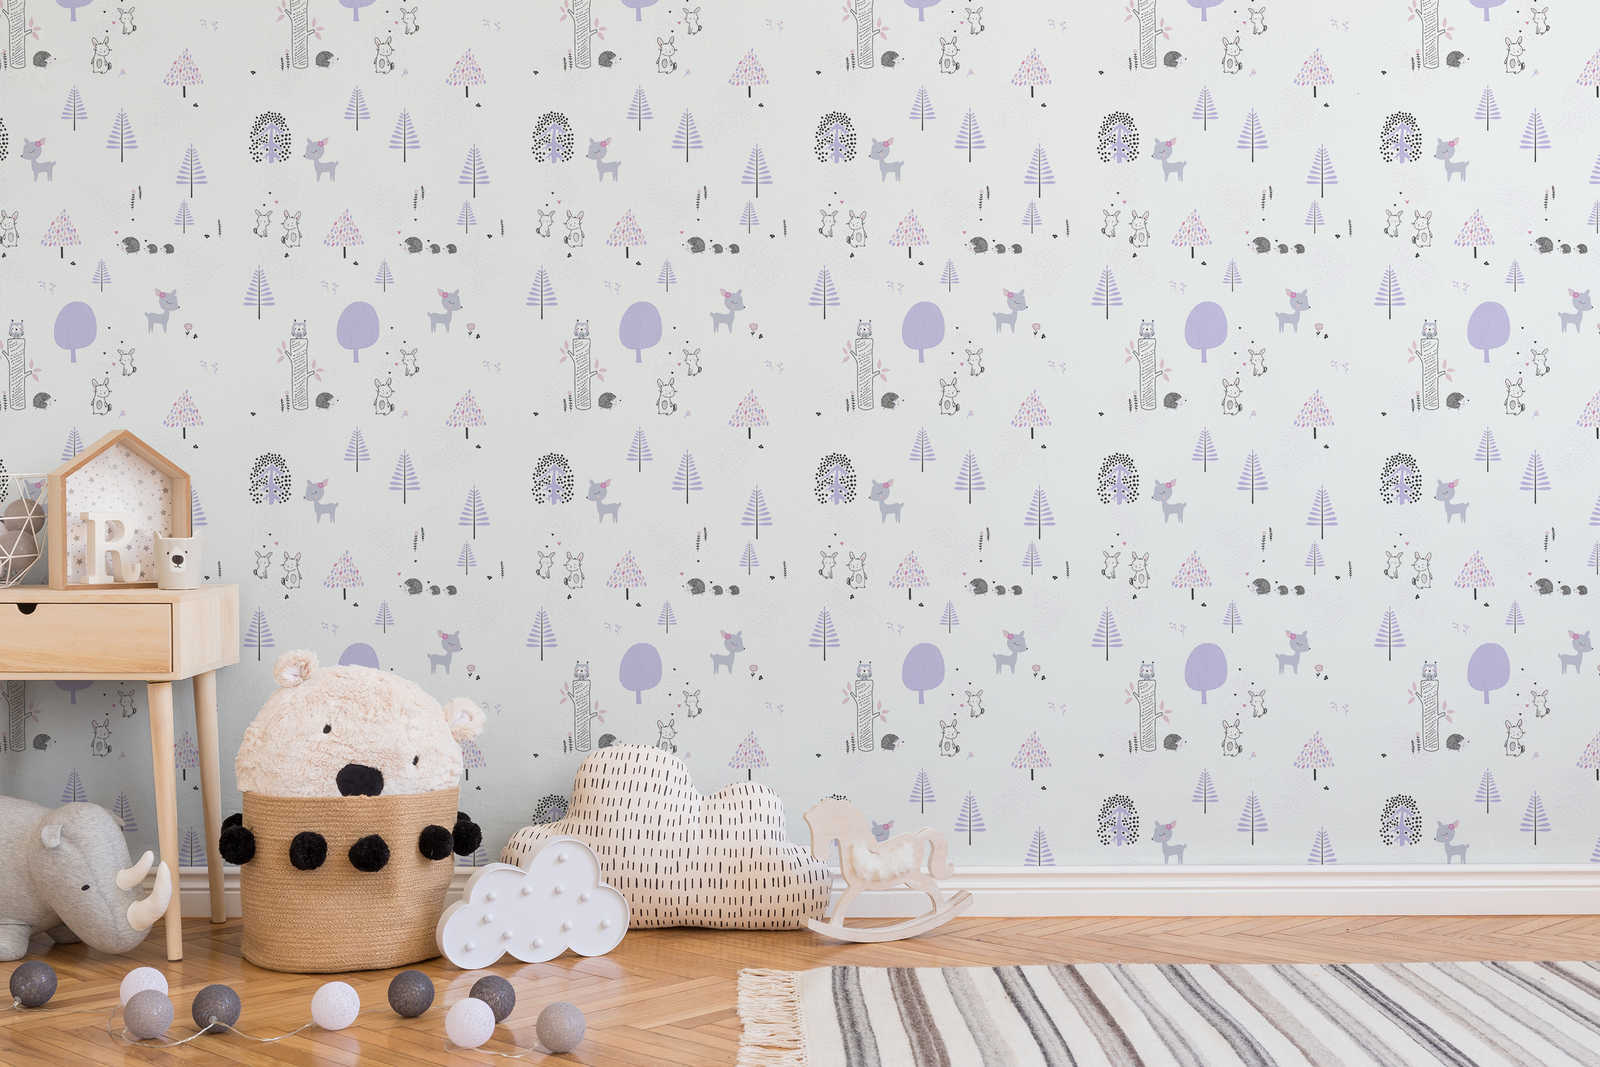             Papier peint chambre enfants forêt animaux - violet, blanc, gris
        